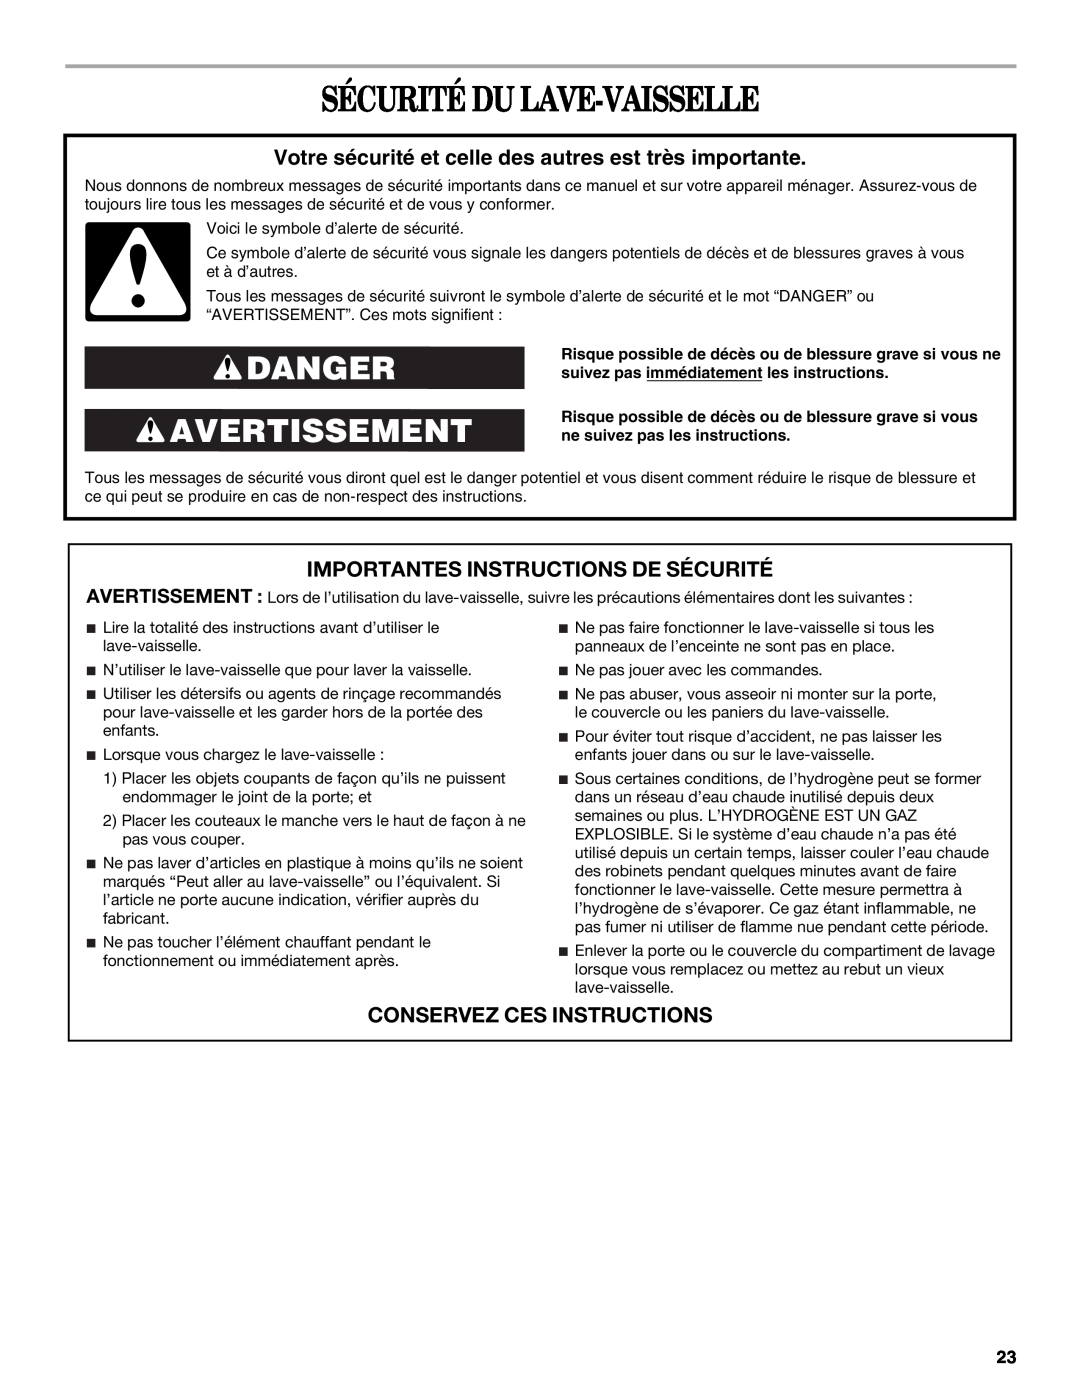 Whirlpool DP940PWS manual Sécurité Du Lave-Vaisselle, Danger Avertissement, Importantes Instructions De Sécurité 